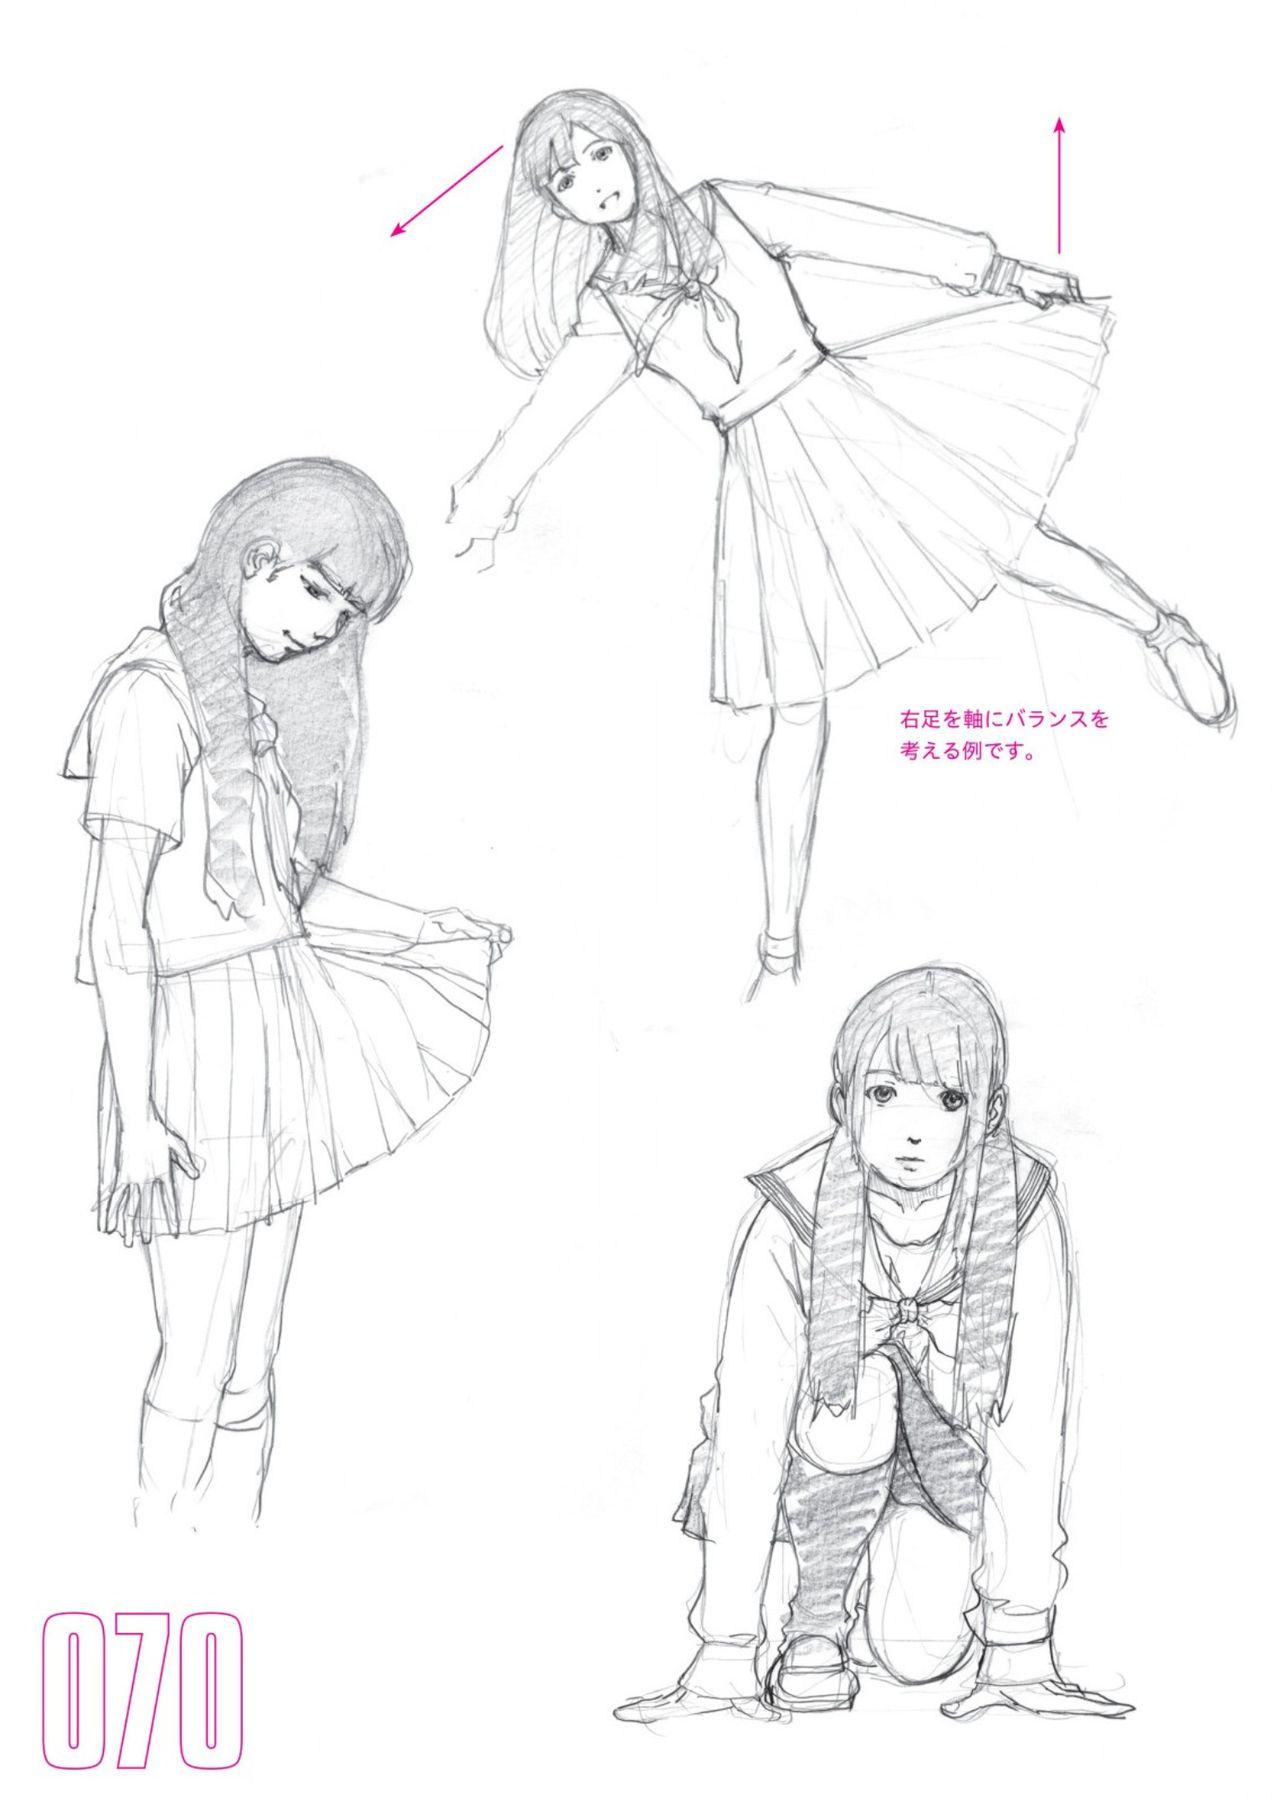 Toru Yoshida Tips for drawing women in 10 minutes 270 Uniforms 71